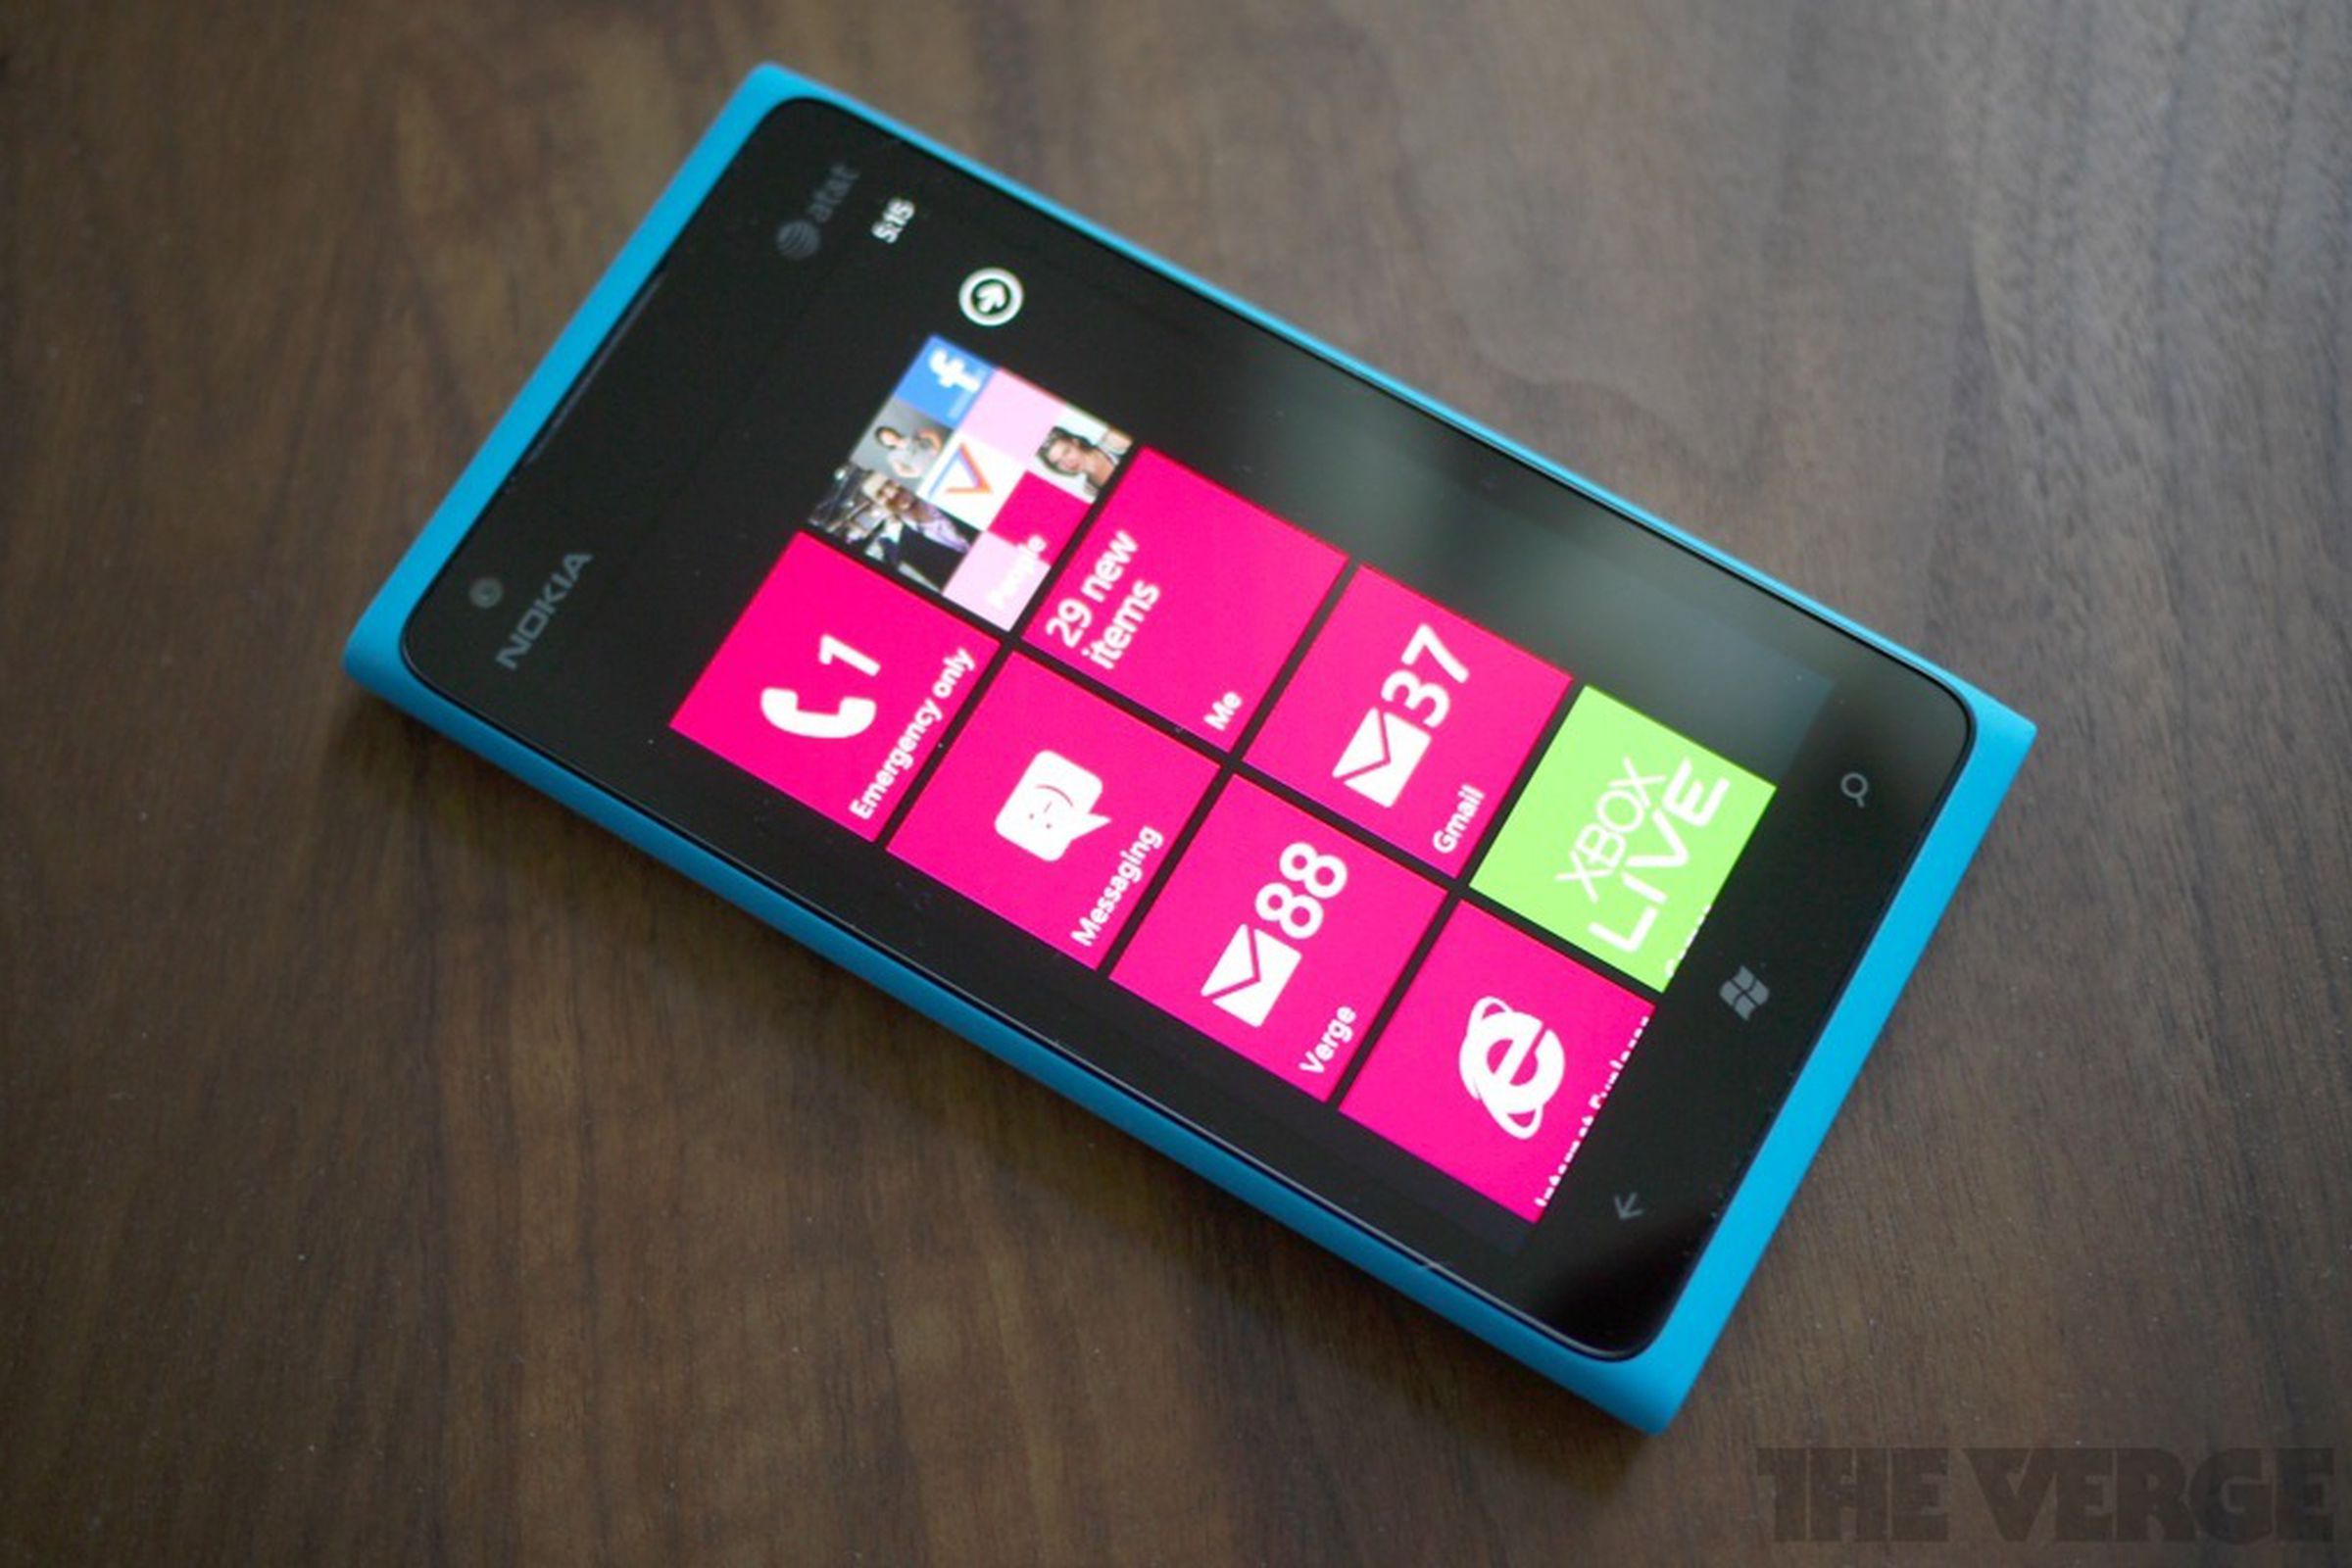 Nokia Lumia 900 hero (1024px)